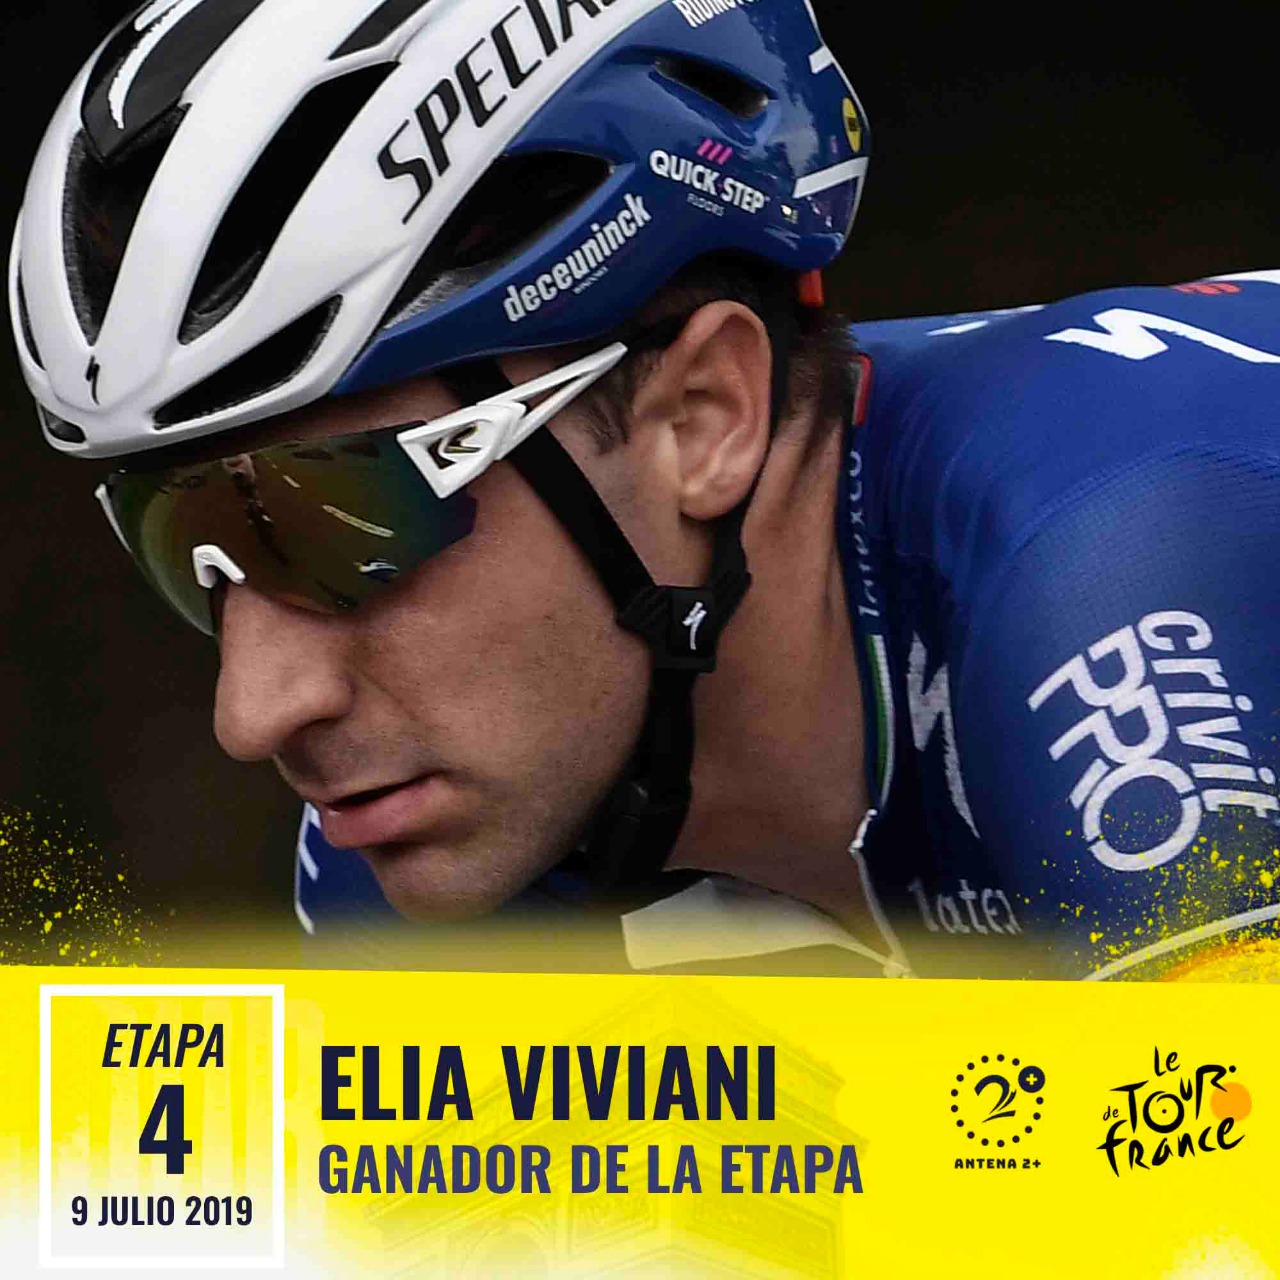 Elia Viviani ganó la cuarta etapa del Tour de Francia 2019